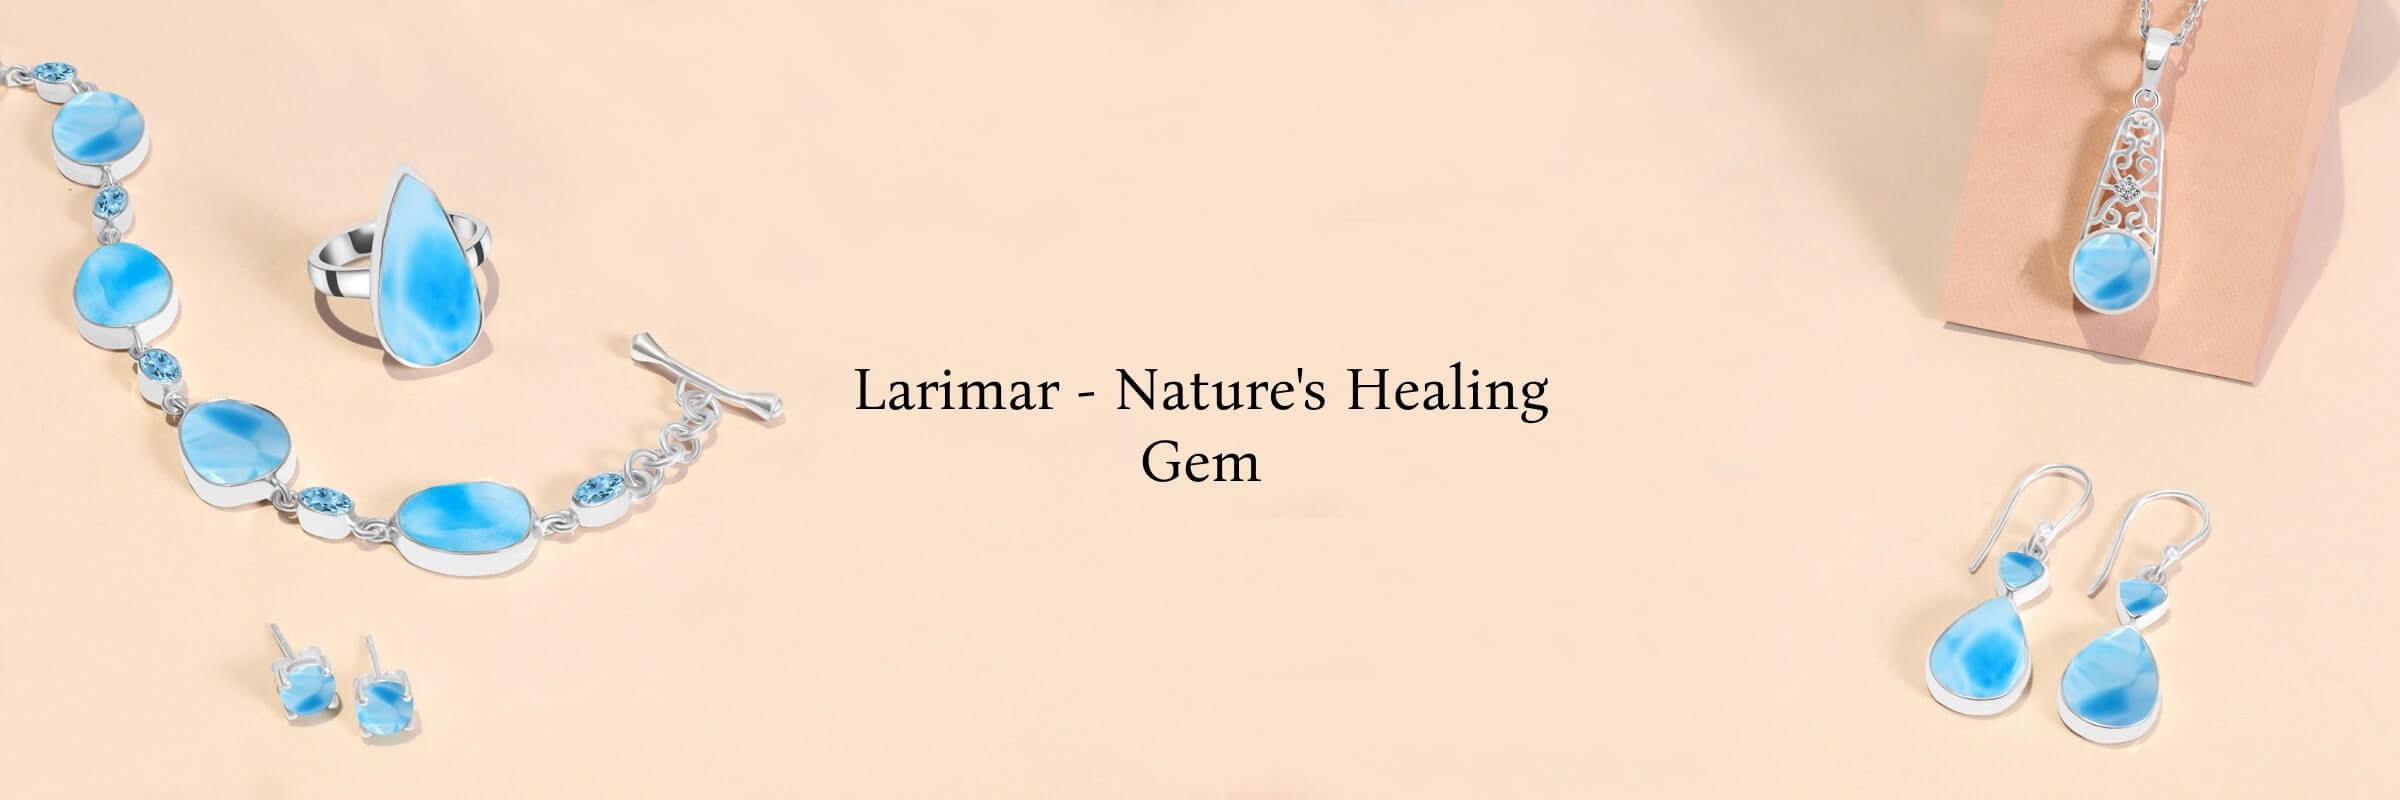 Benefits of Wearing Larimar